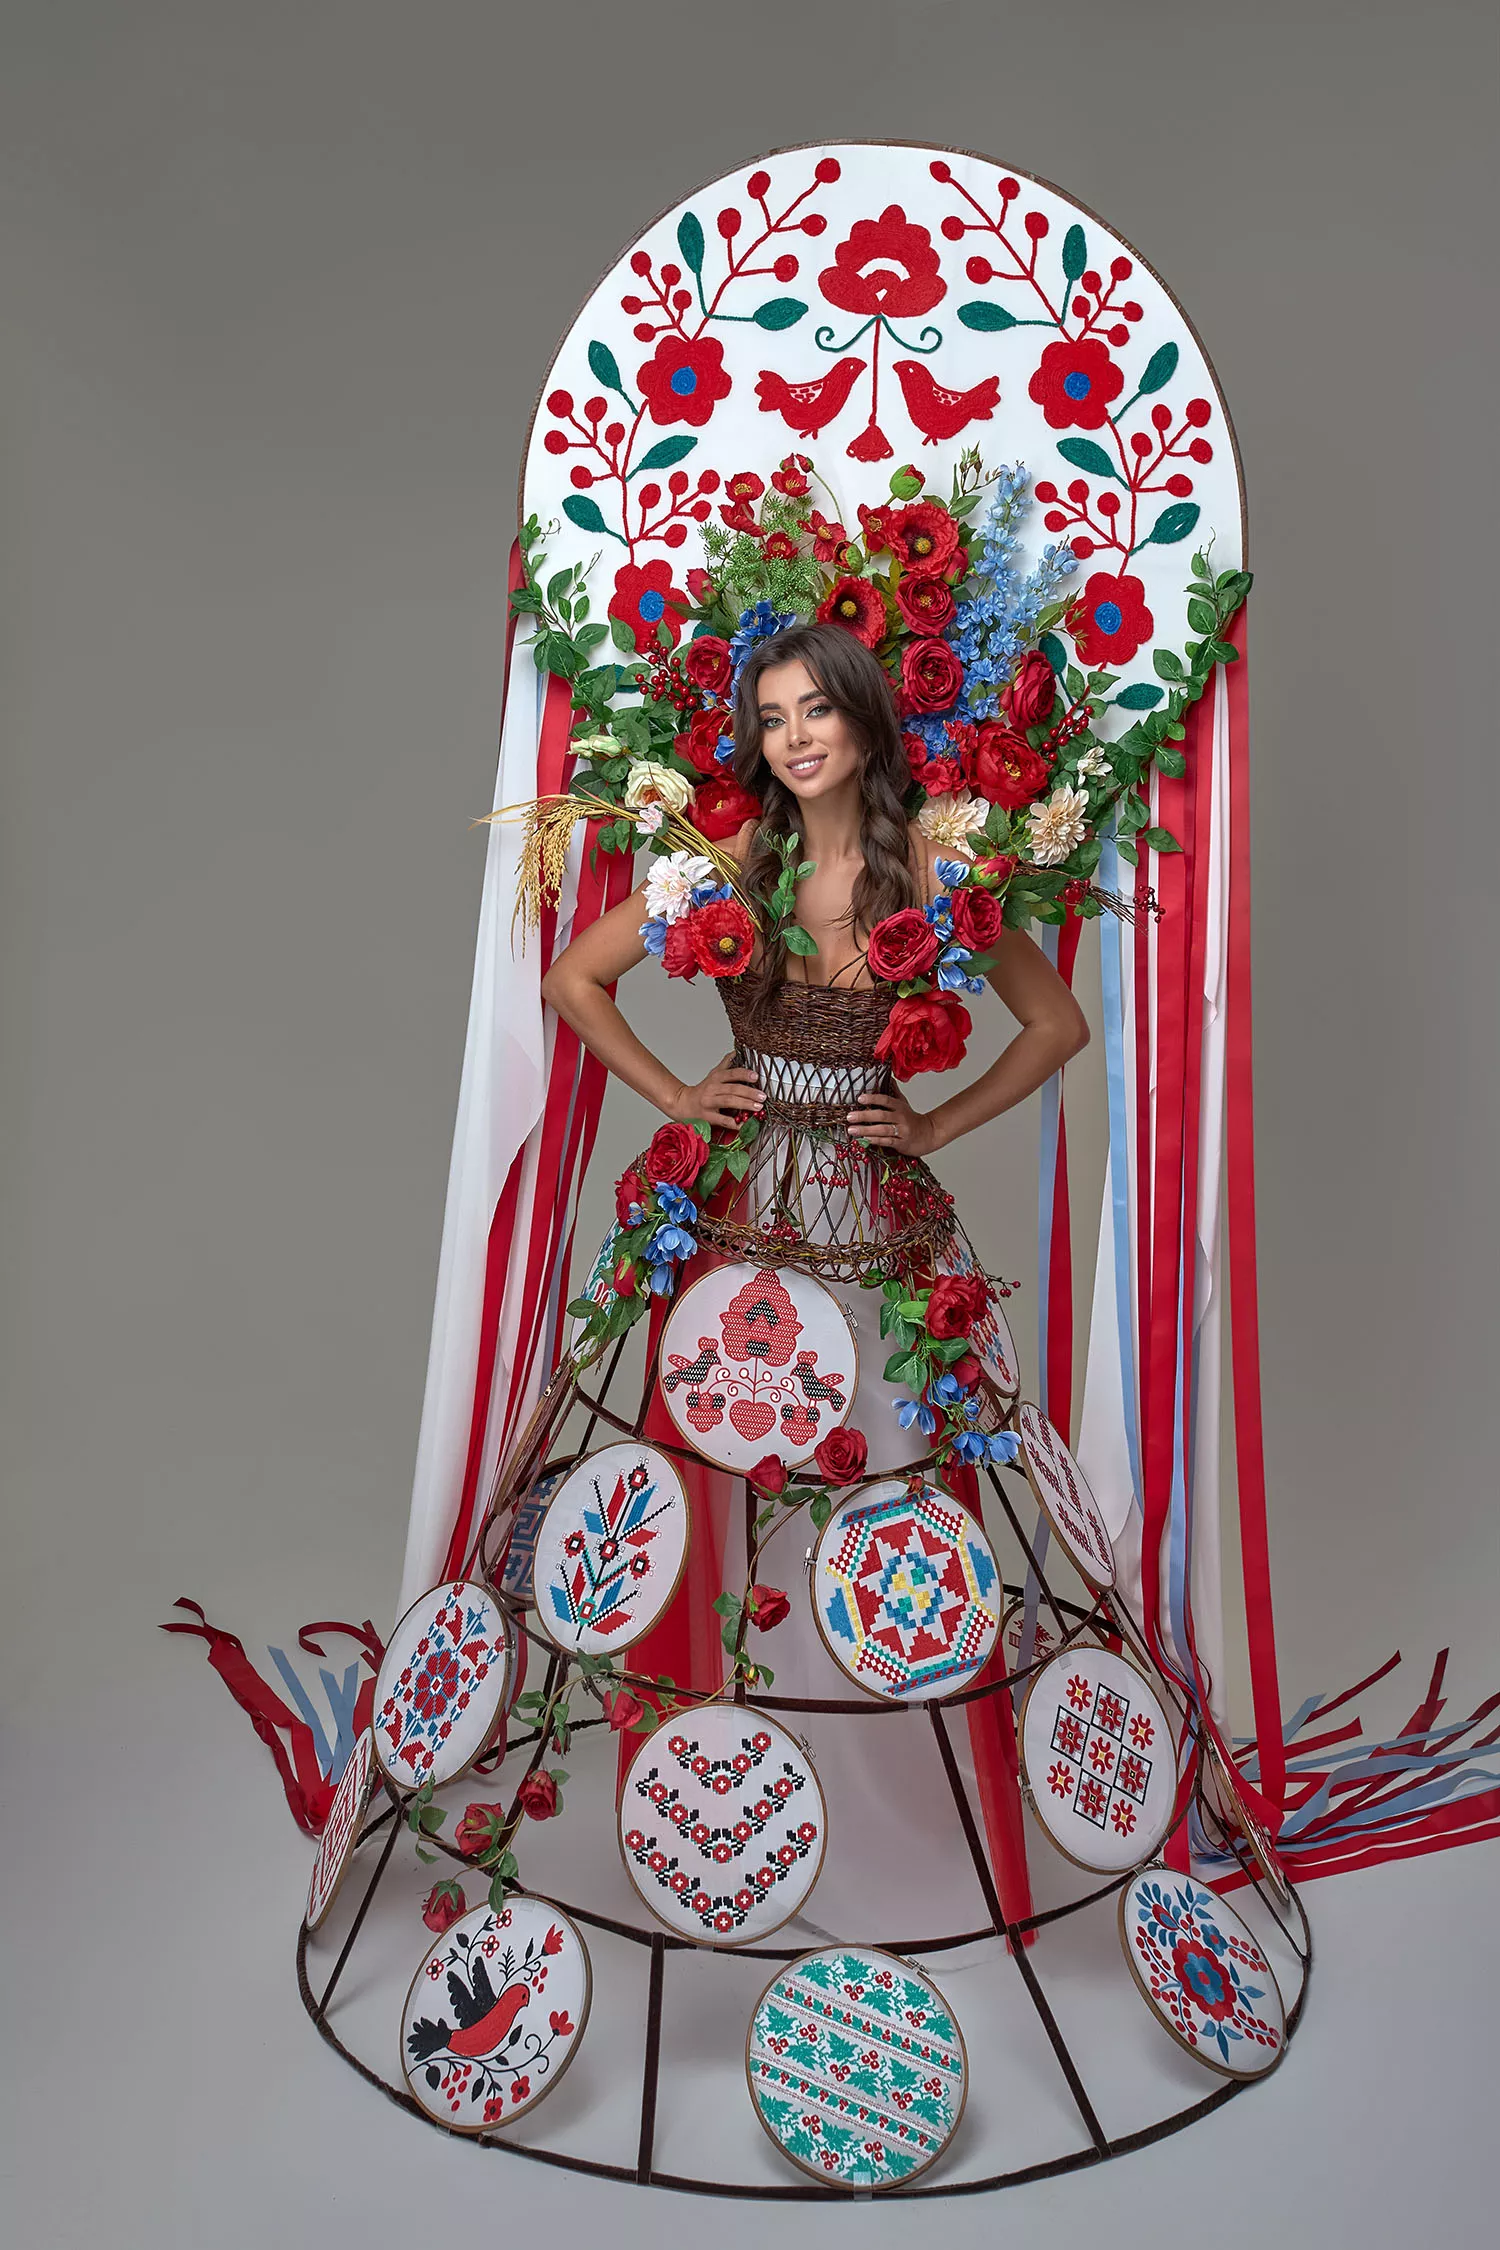 Национальный костюм Анны Неплях весит более 15 килограмм